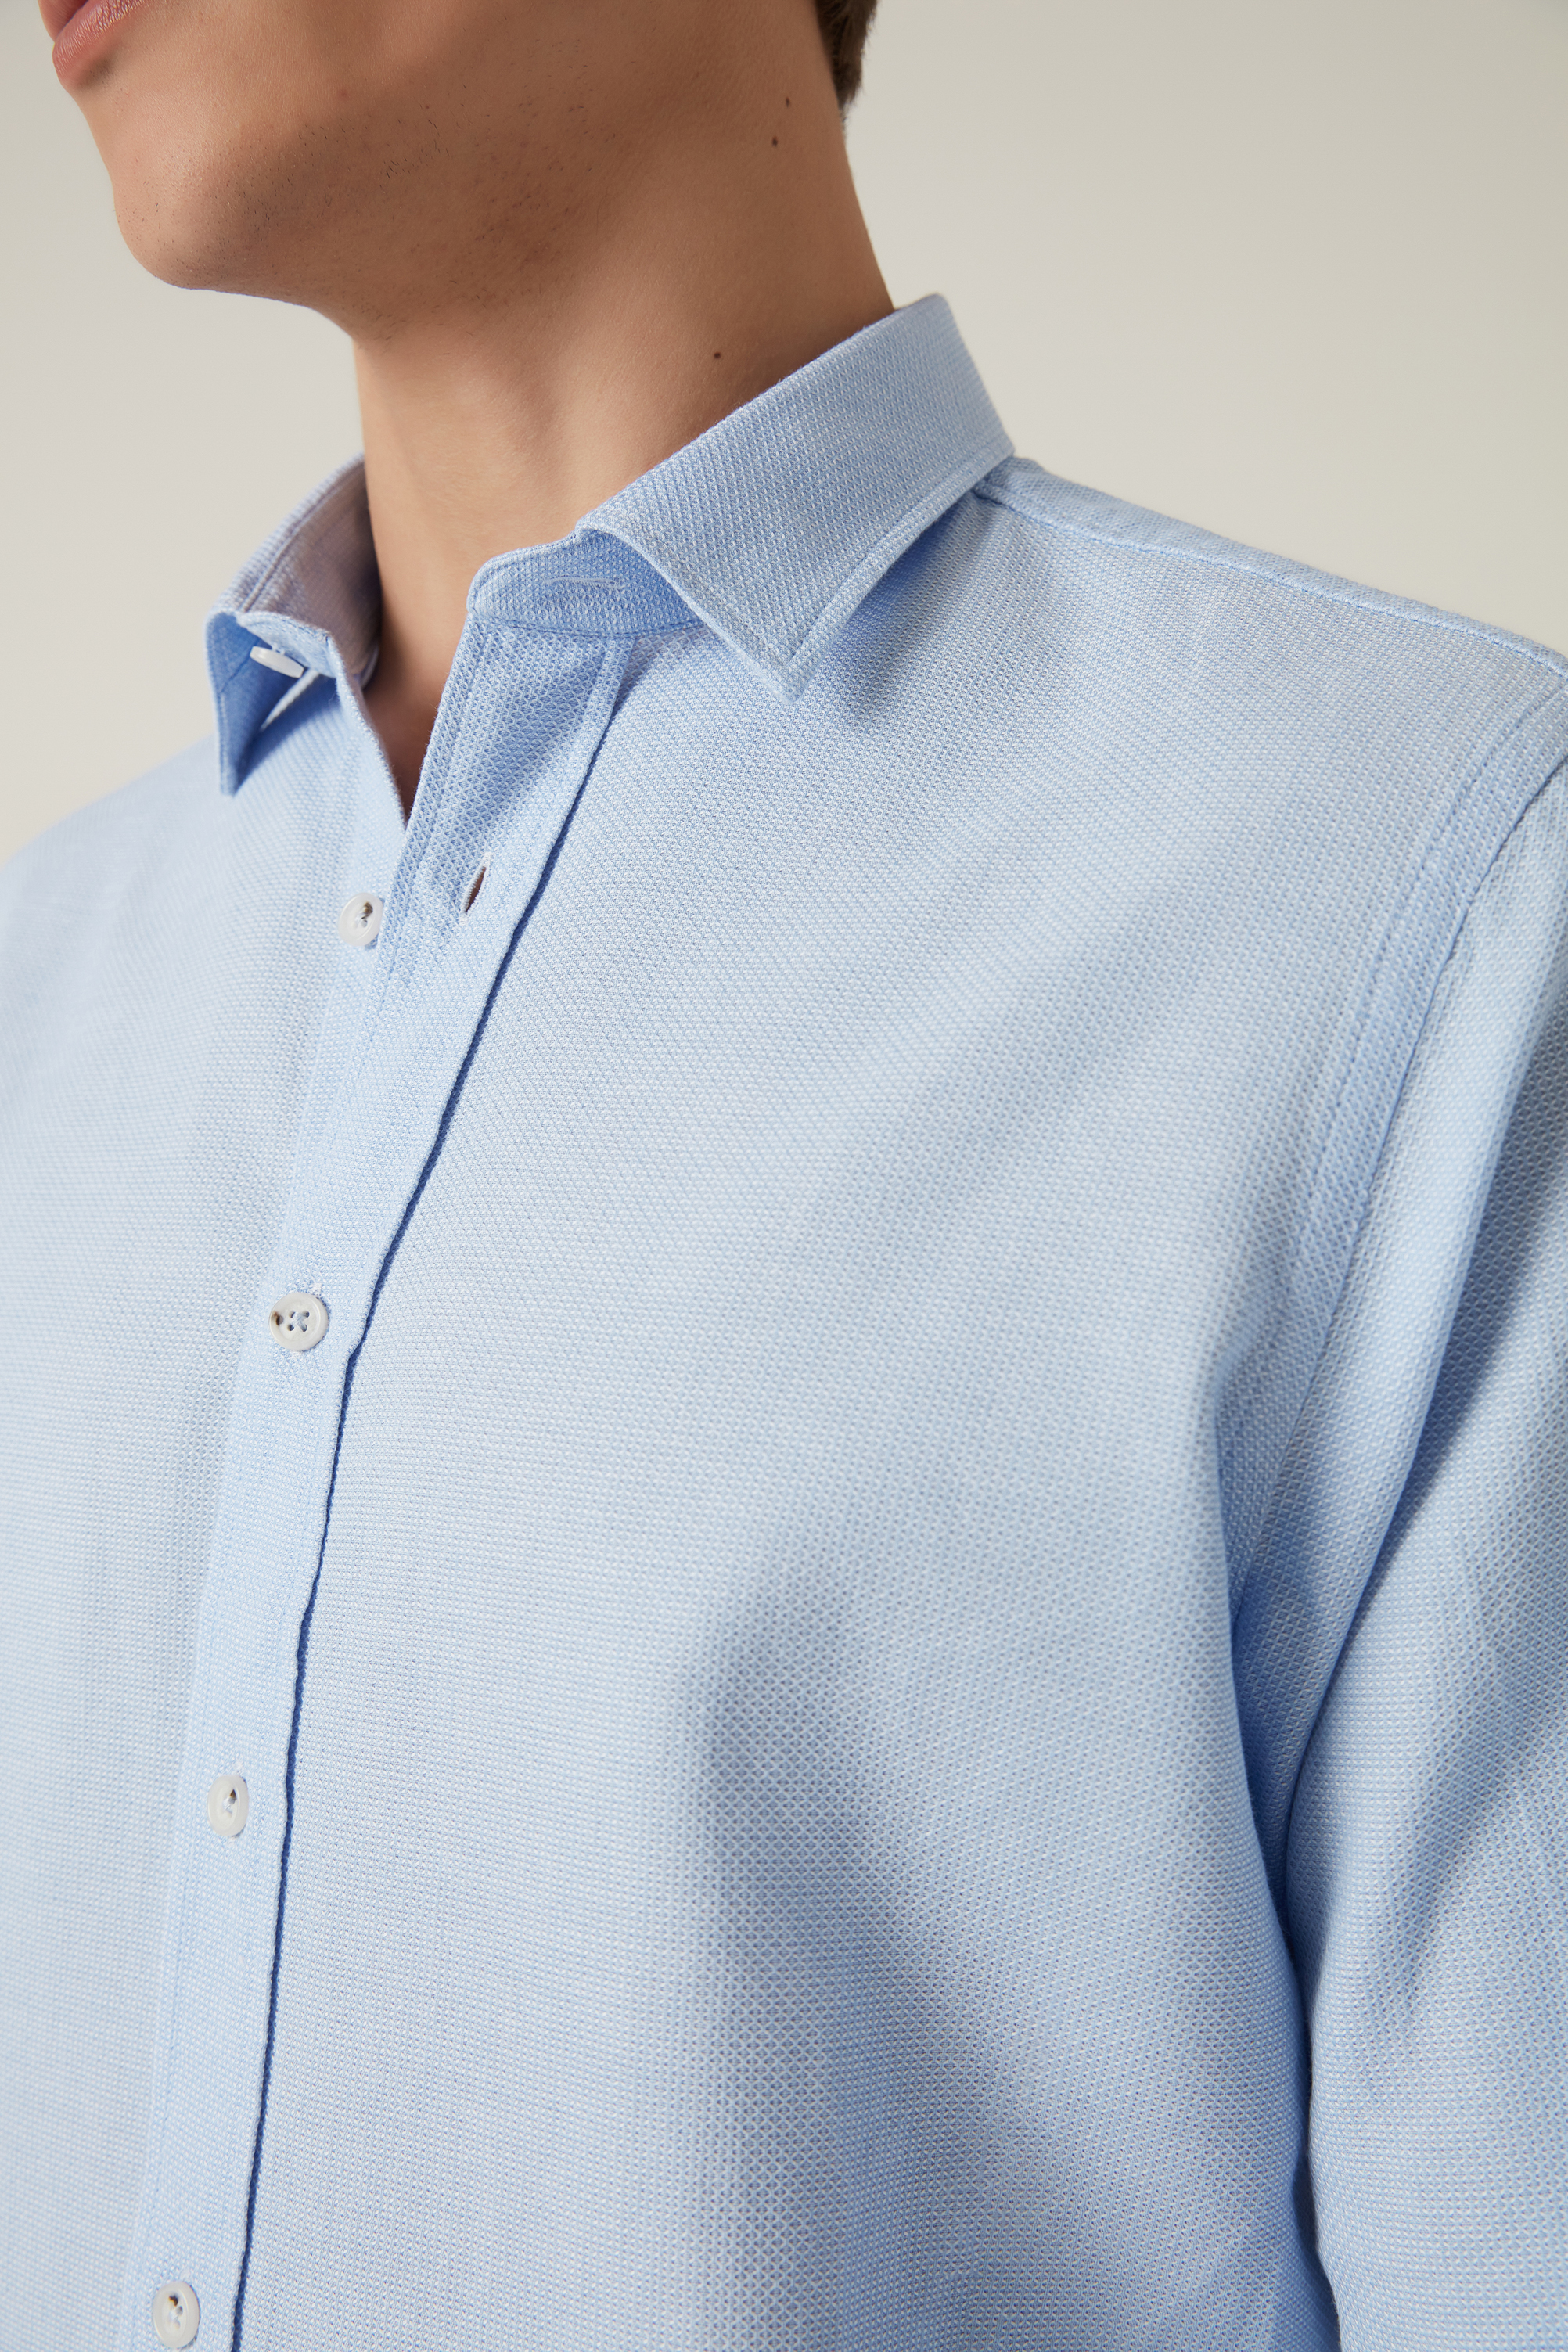 Damat Tween Damat Comfort Mavi Gömlek. 2